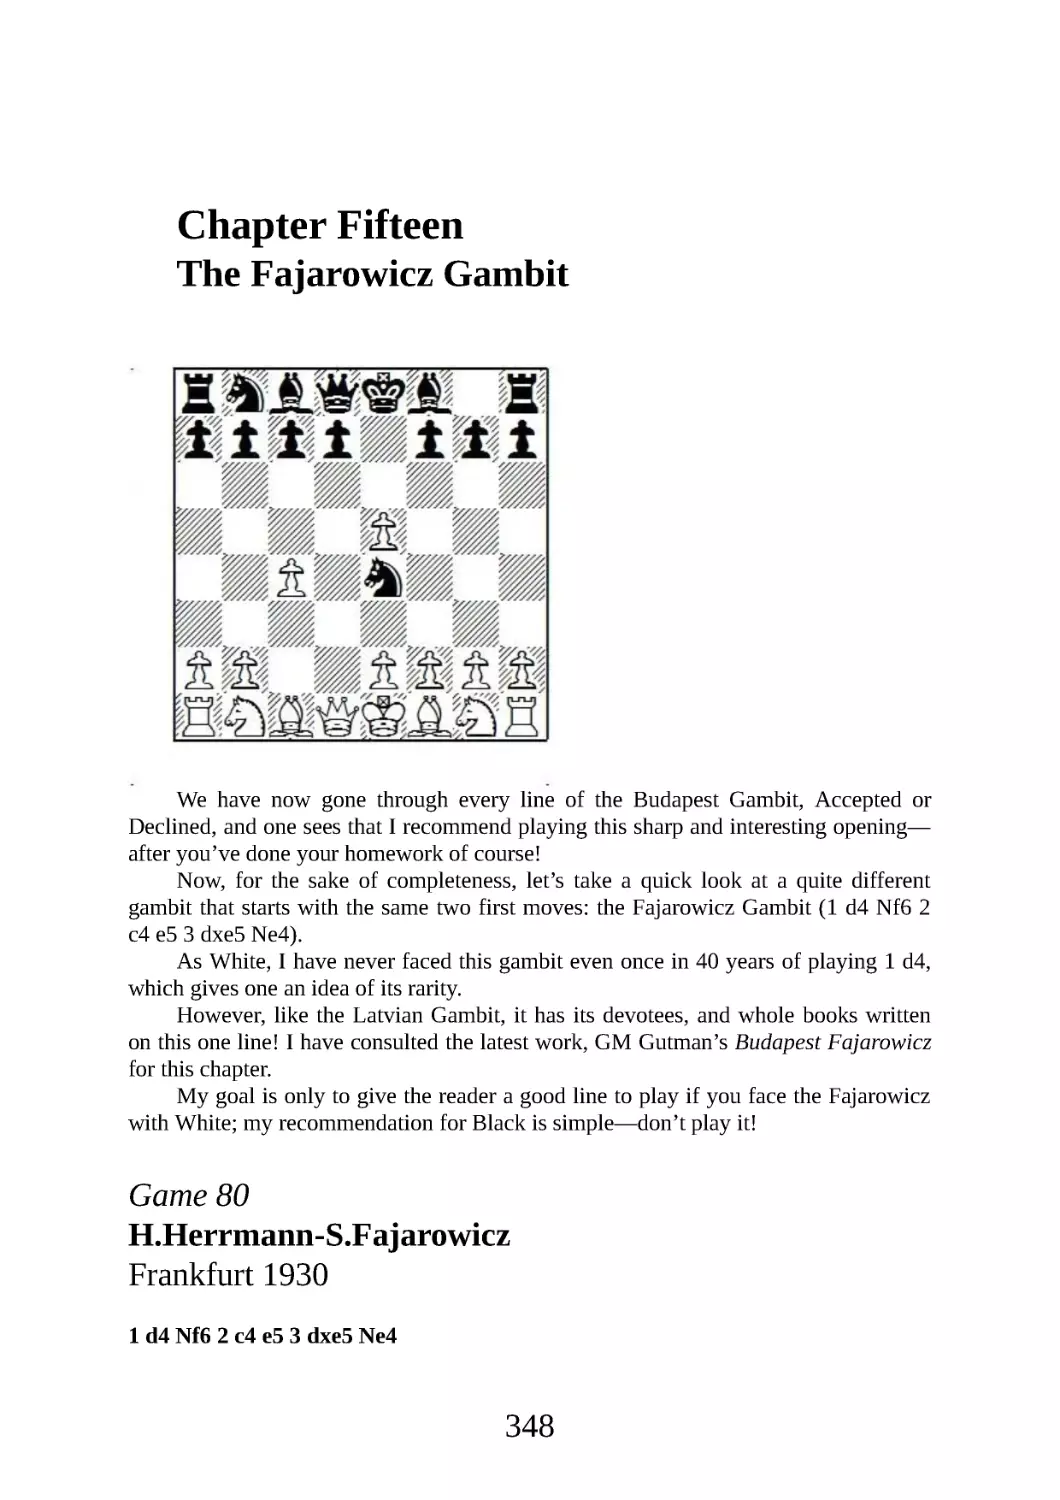 15 The Fajarowicz Gambit